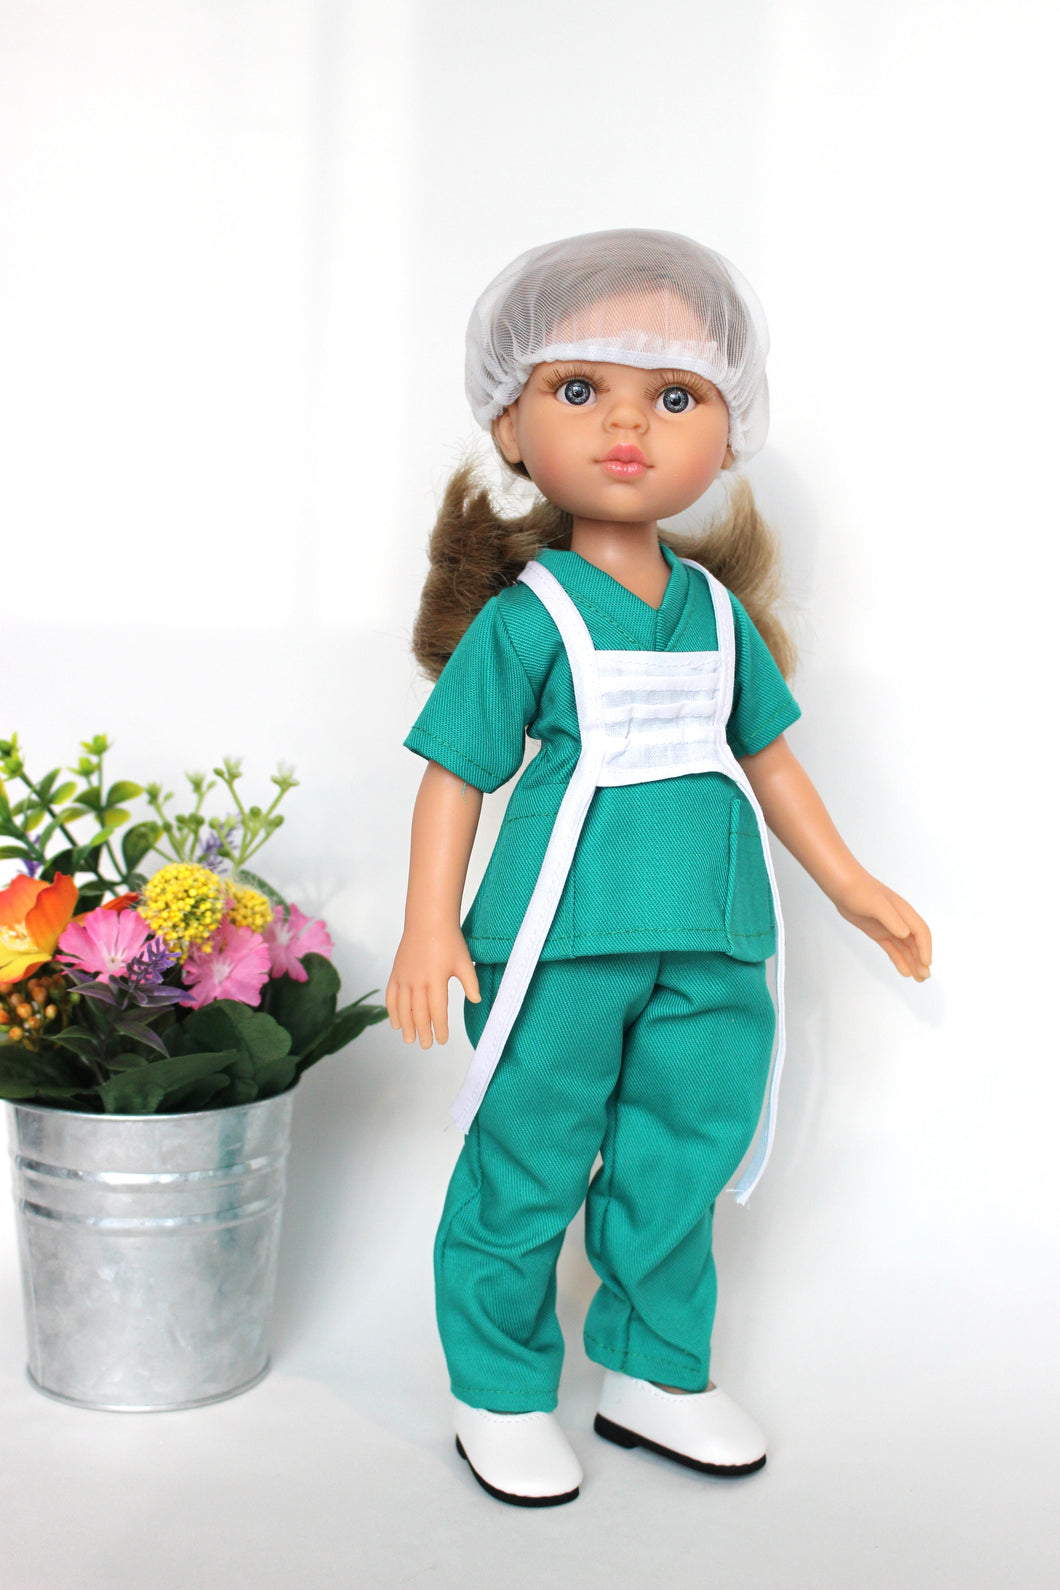 Nurse Carla (Las Amigas Paola Reina)